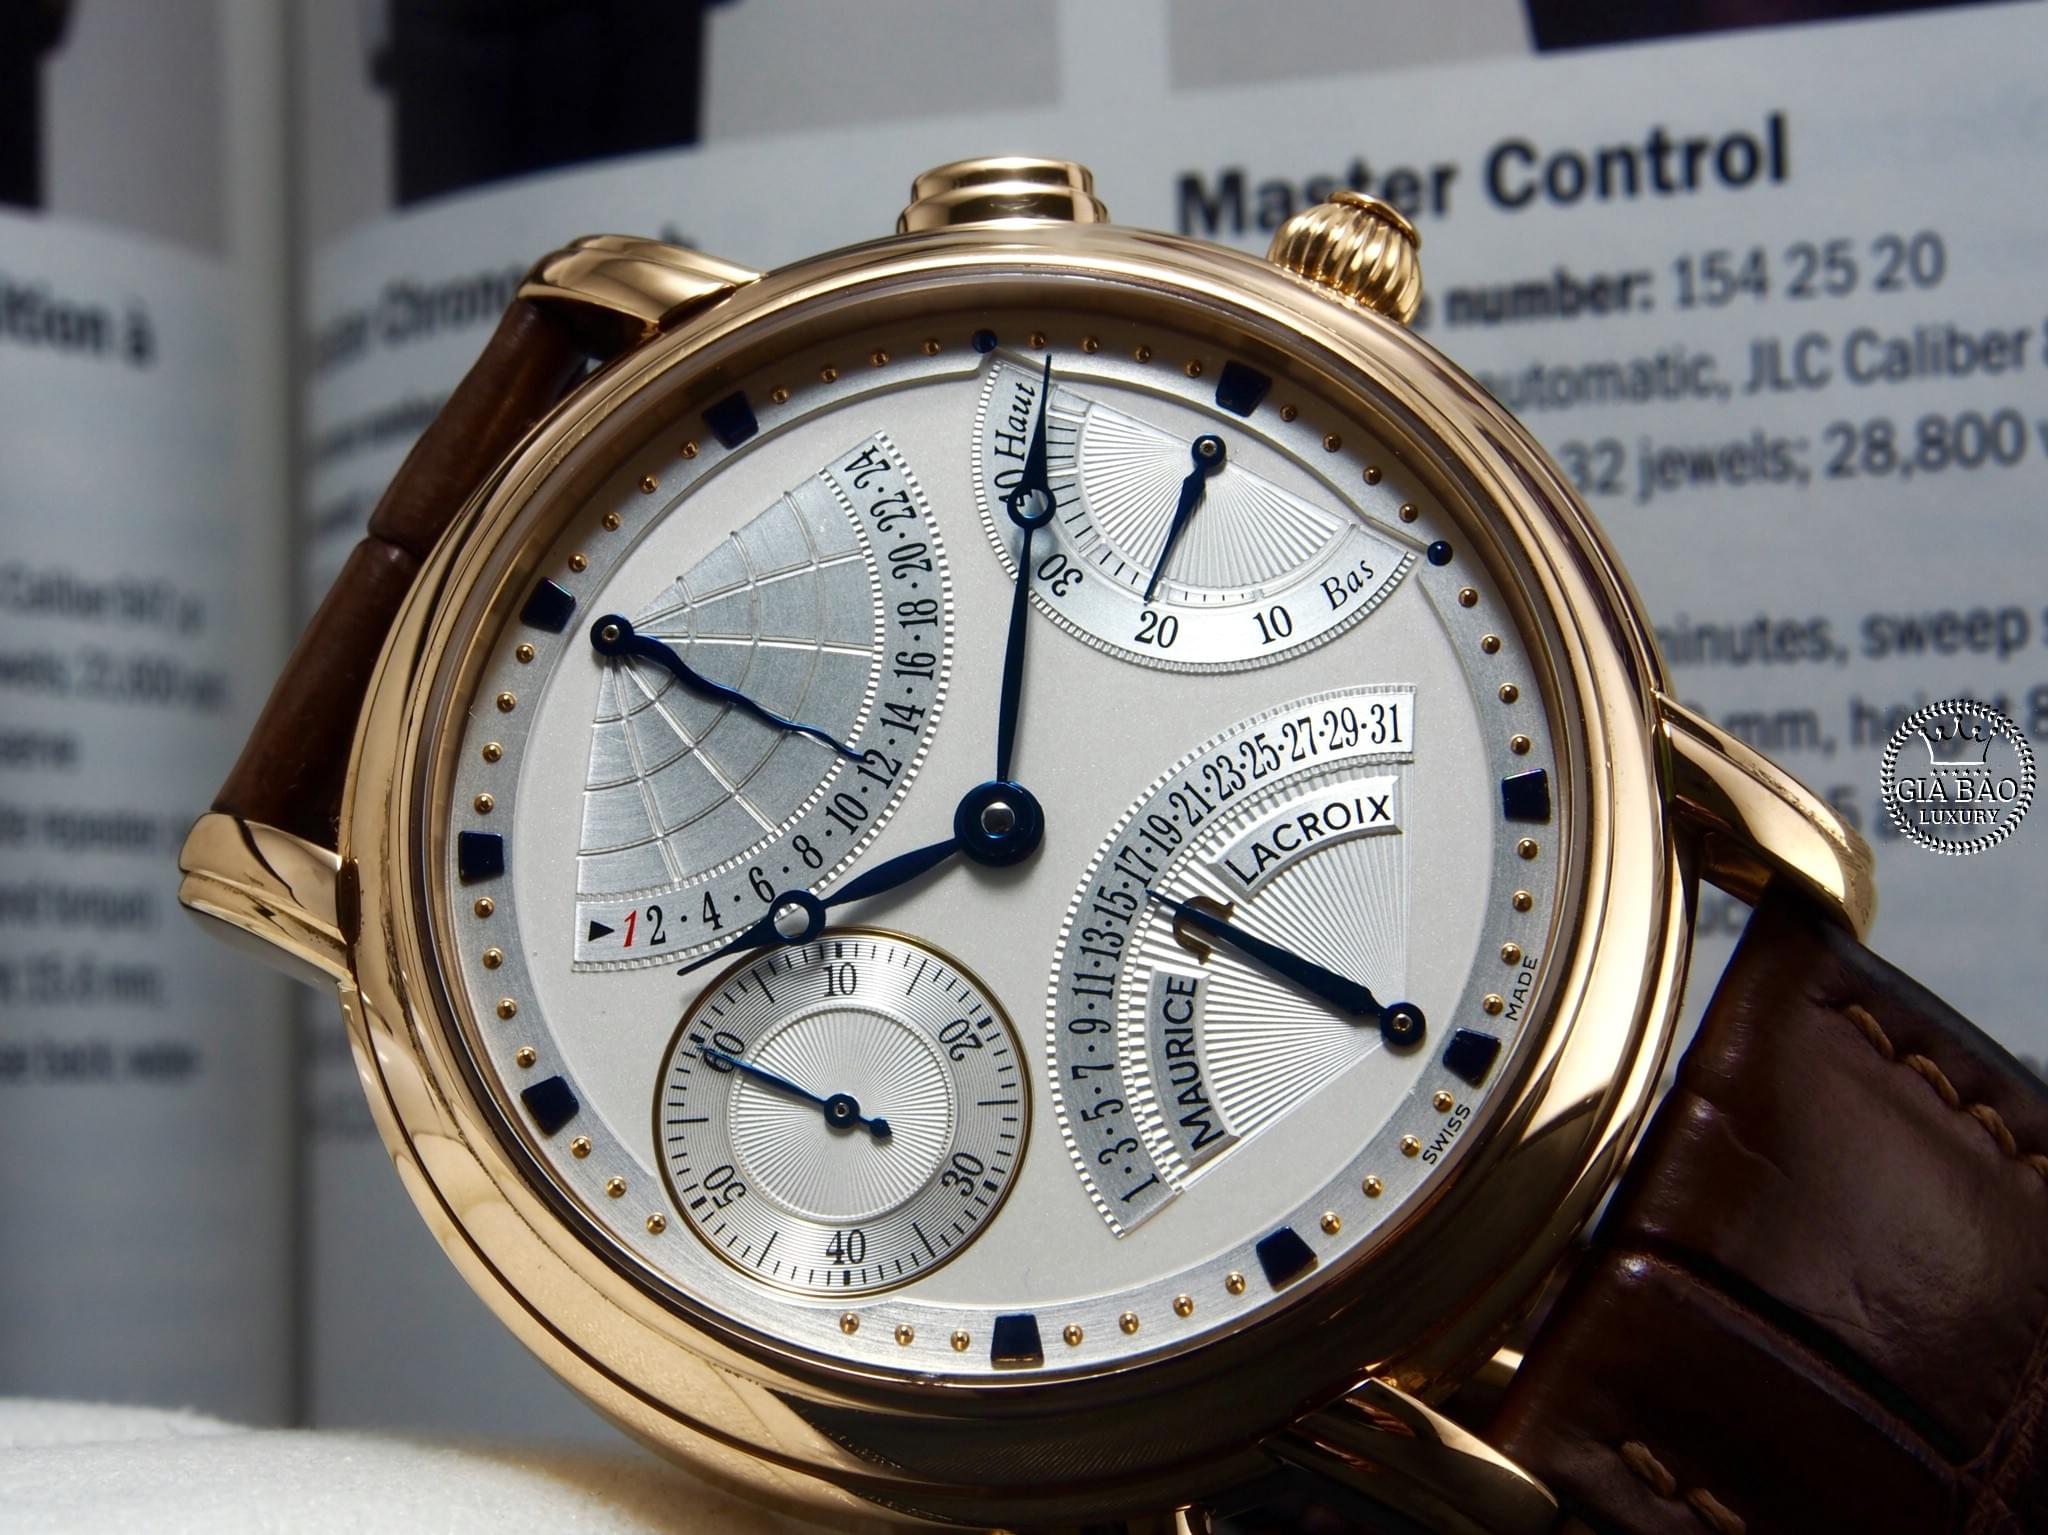 Thu mua đồng hồ Maurice Lacroix chính hãng tại Gia Bảo Luxury